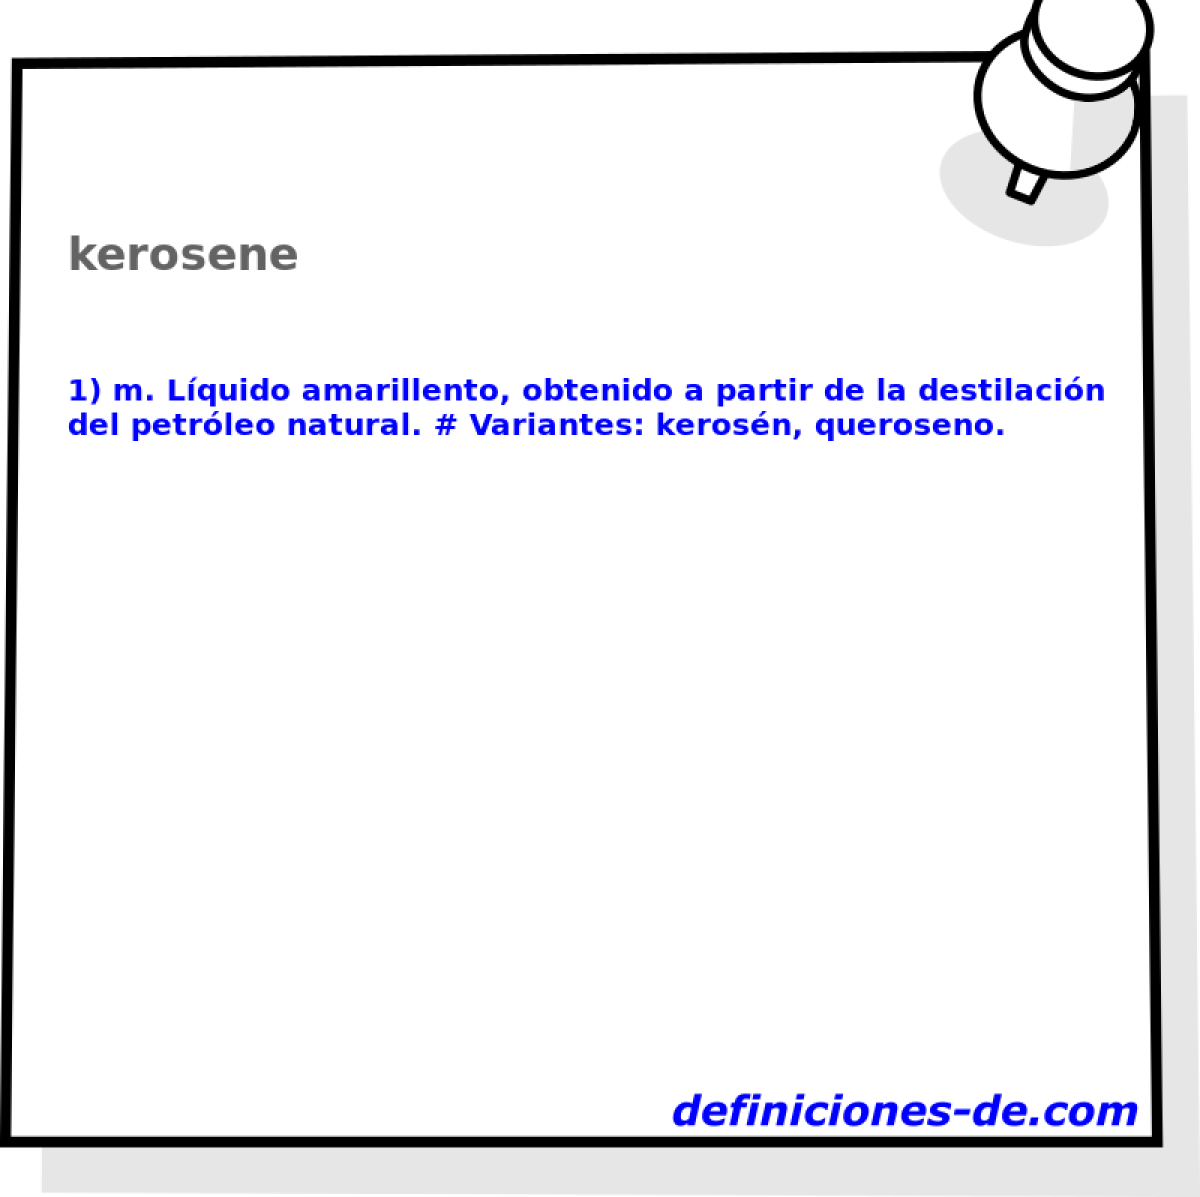 kerosene 